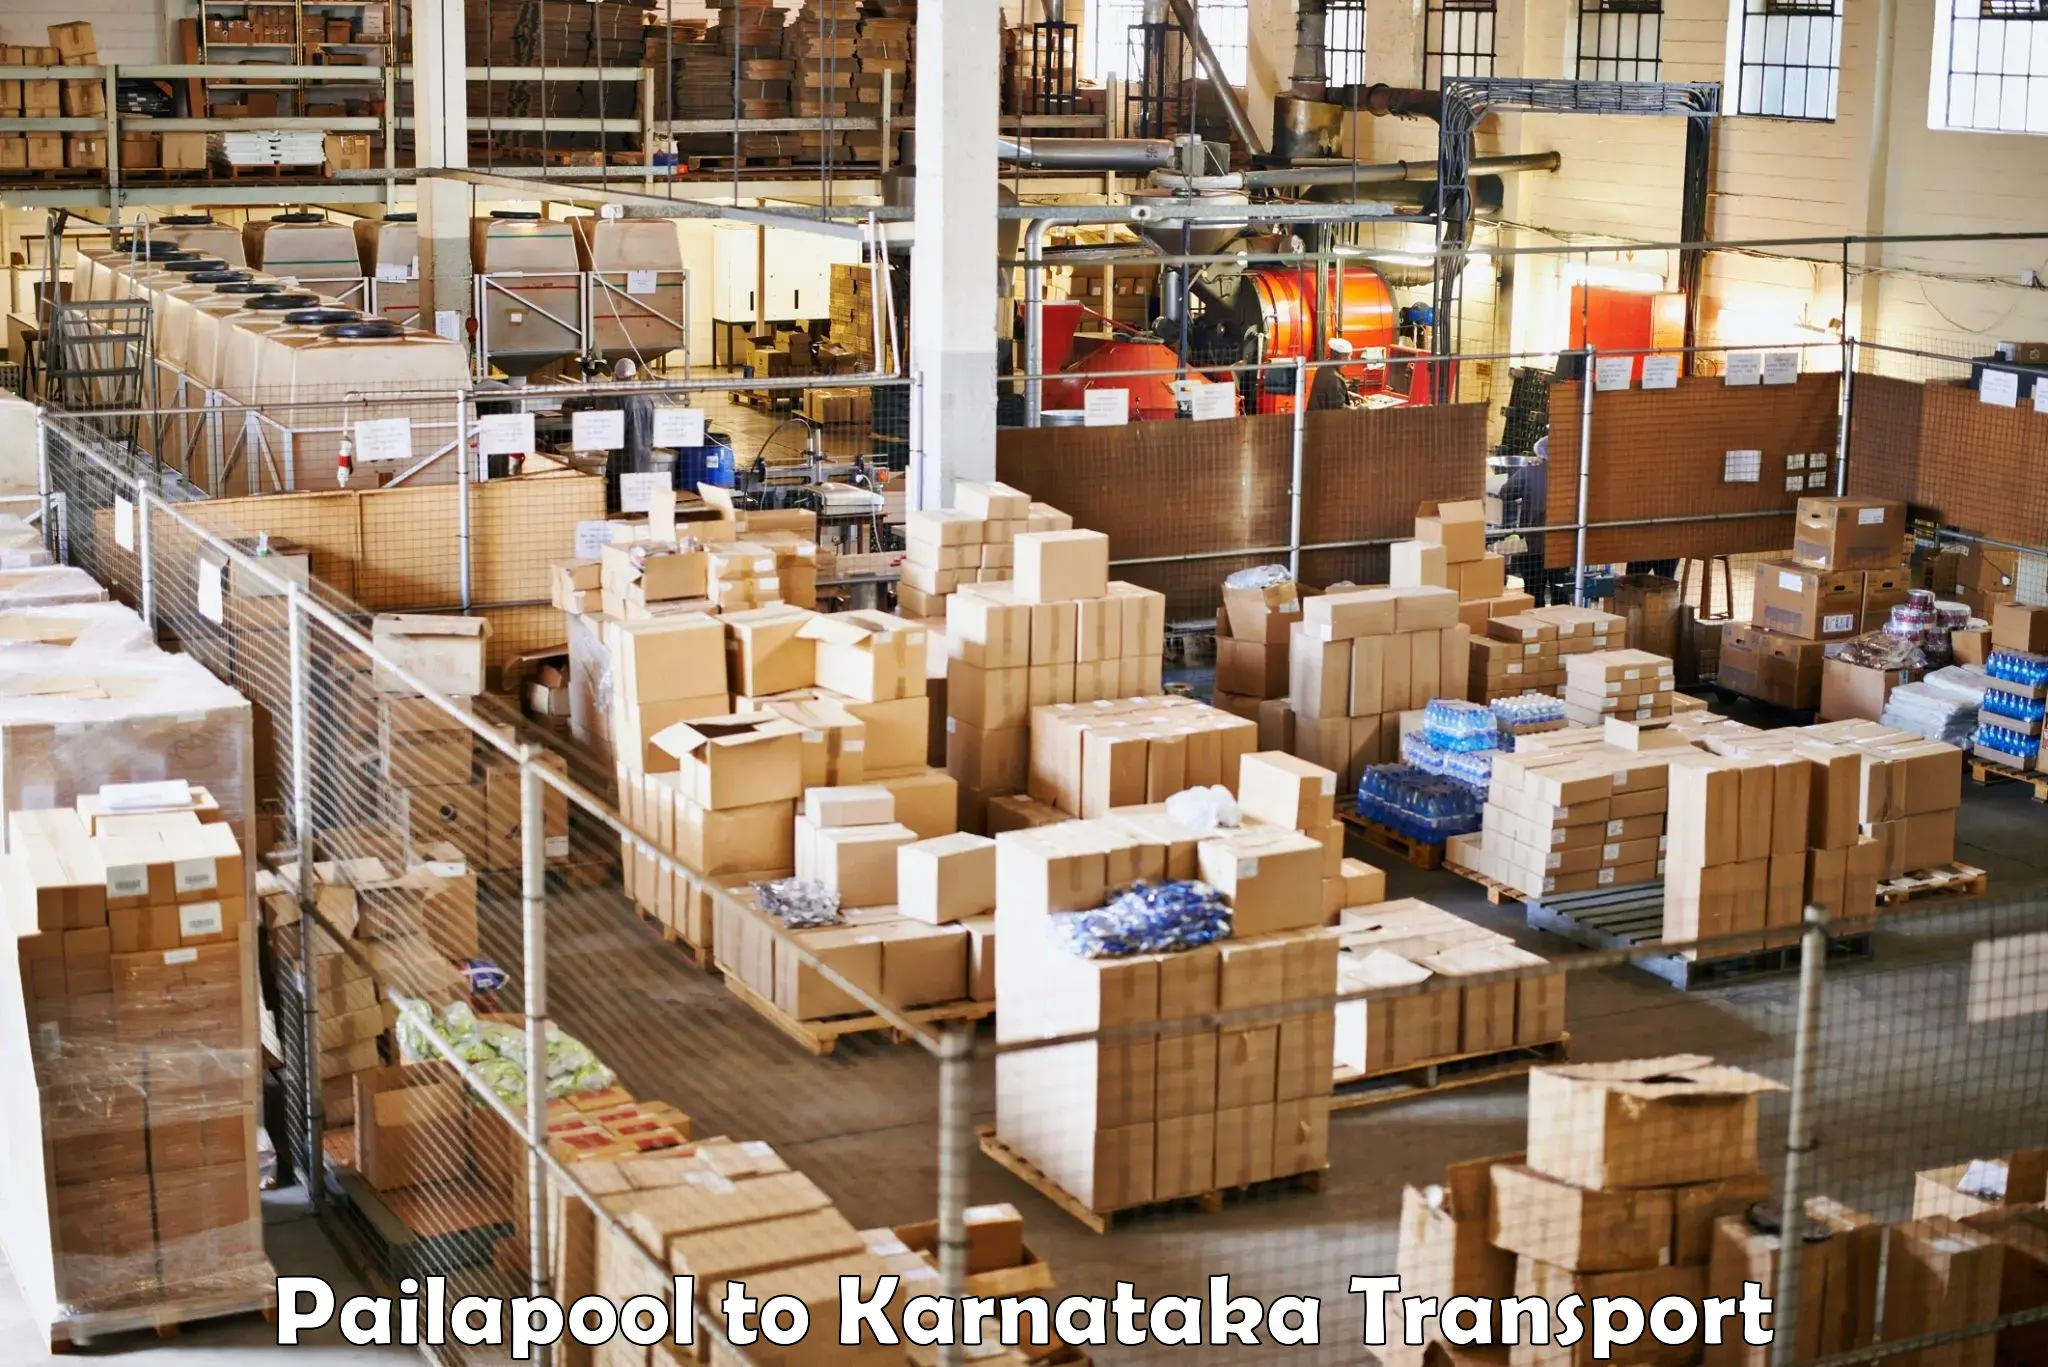 Shipping partner Pailapool to Chikkanayakanahalli